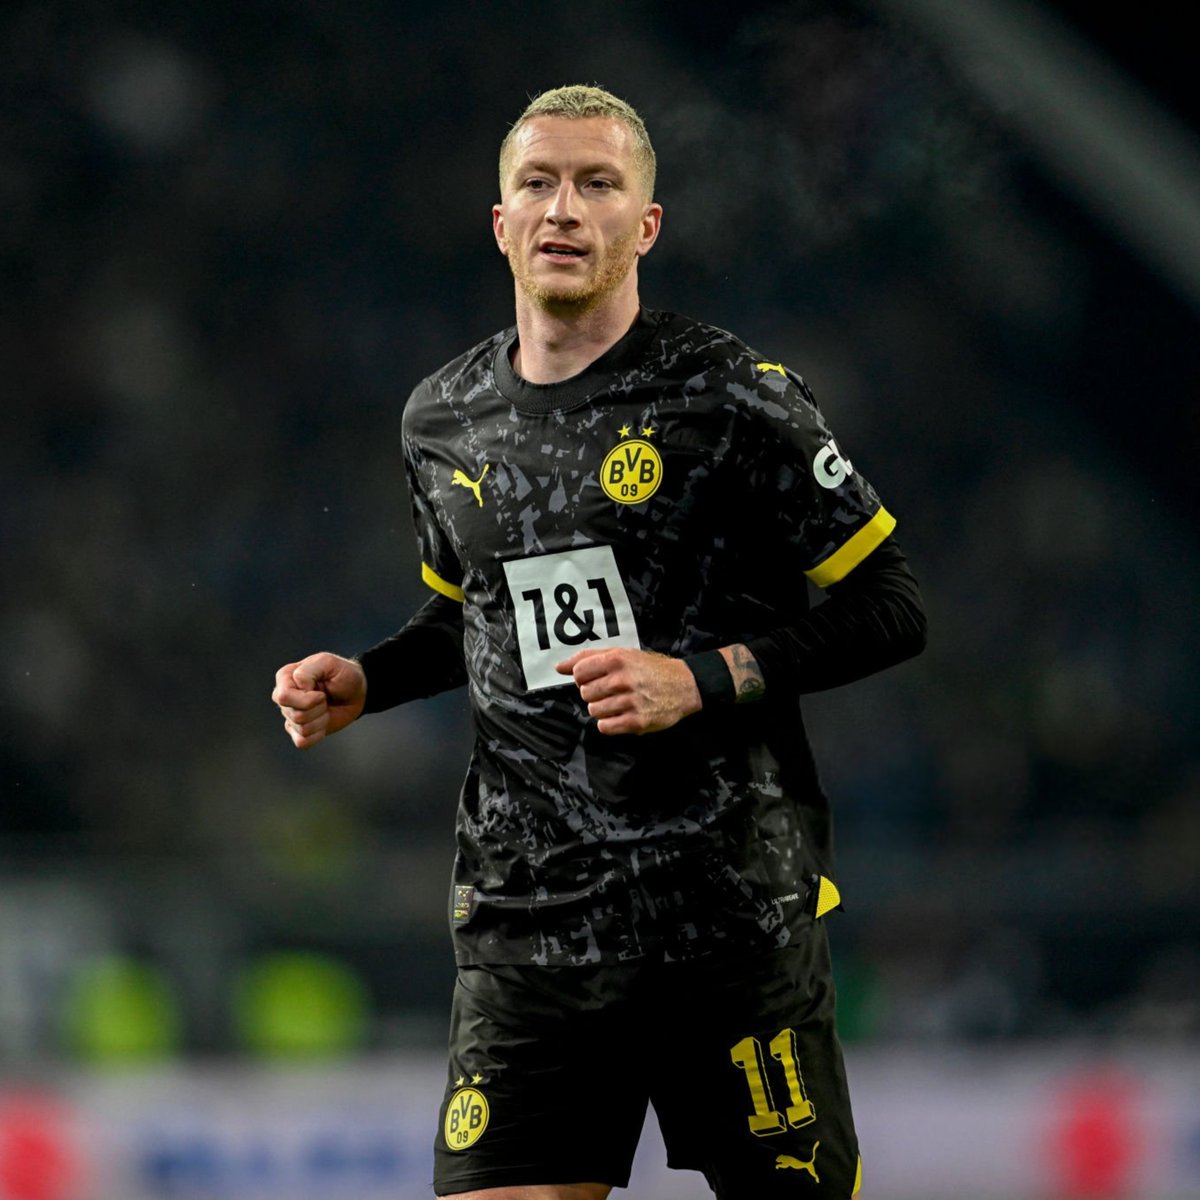 Marco Reus, Borussia Dortmund ile olan sözleşmesini uzatmayacak. 34 yaşındaki oyuncu, sezon sonunda Dortmund'dan ayrılacak. (Bild)